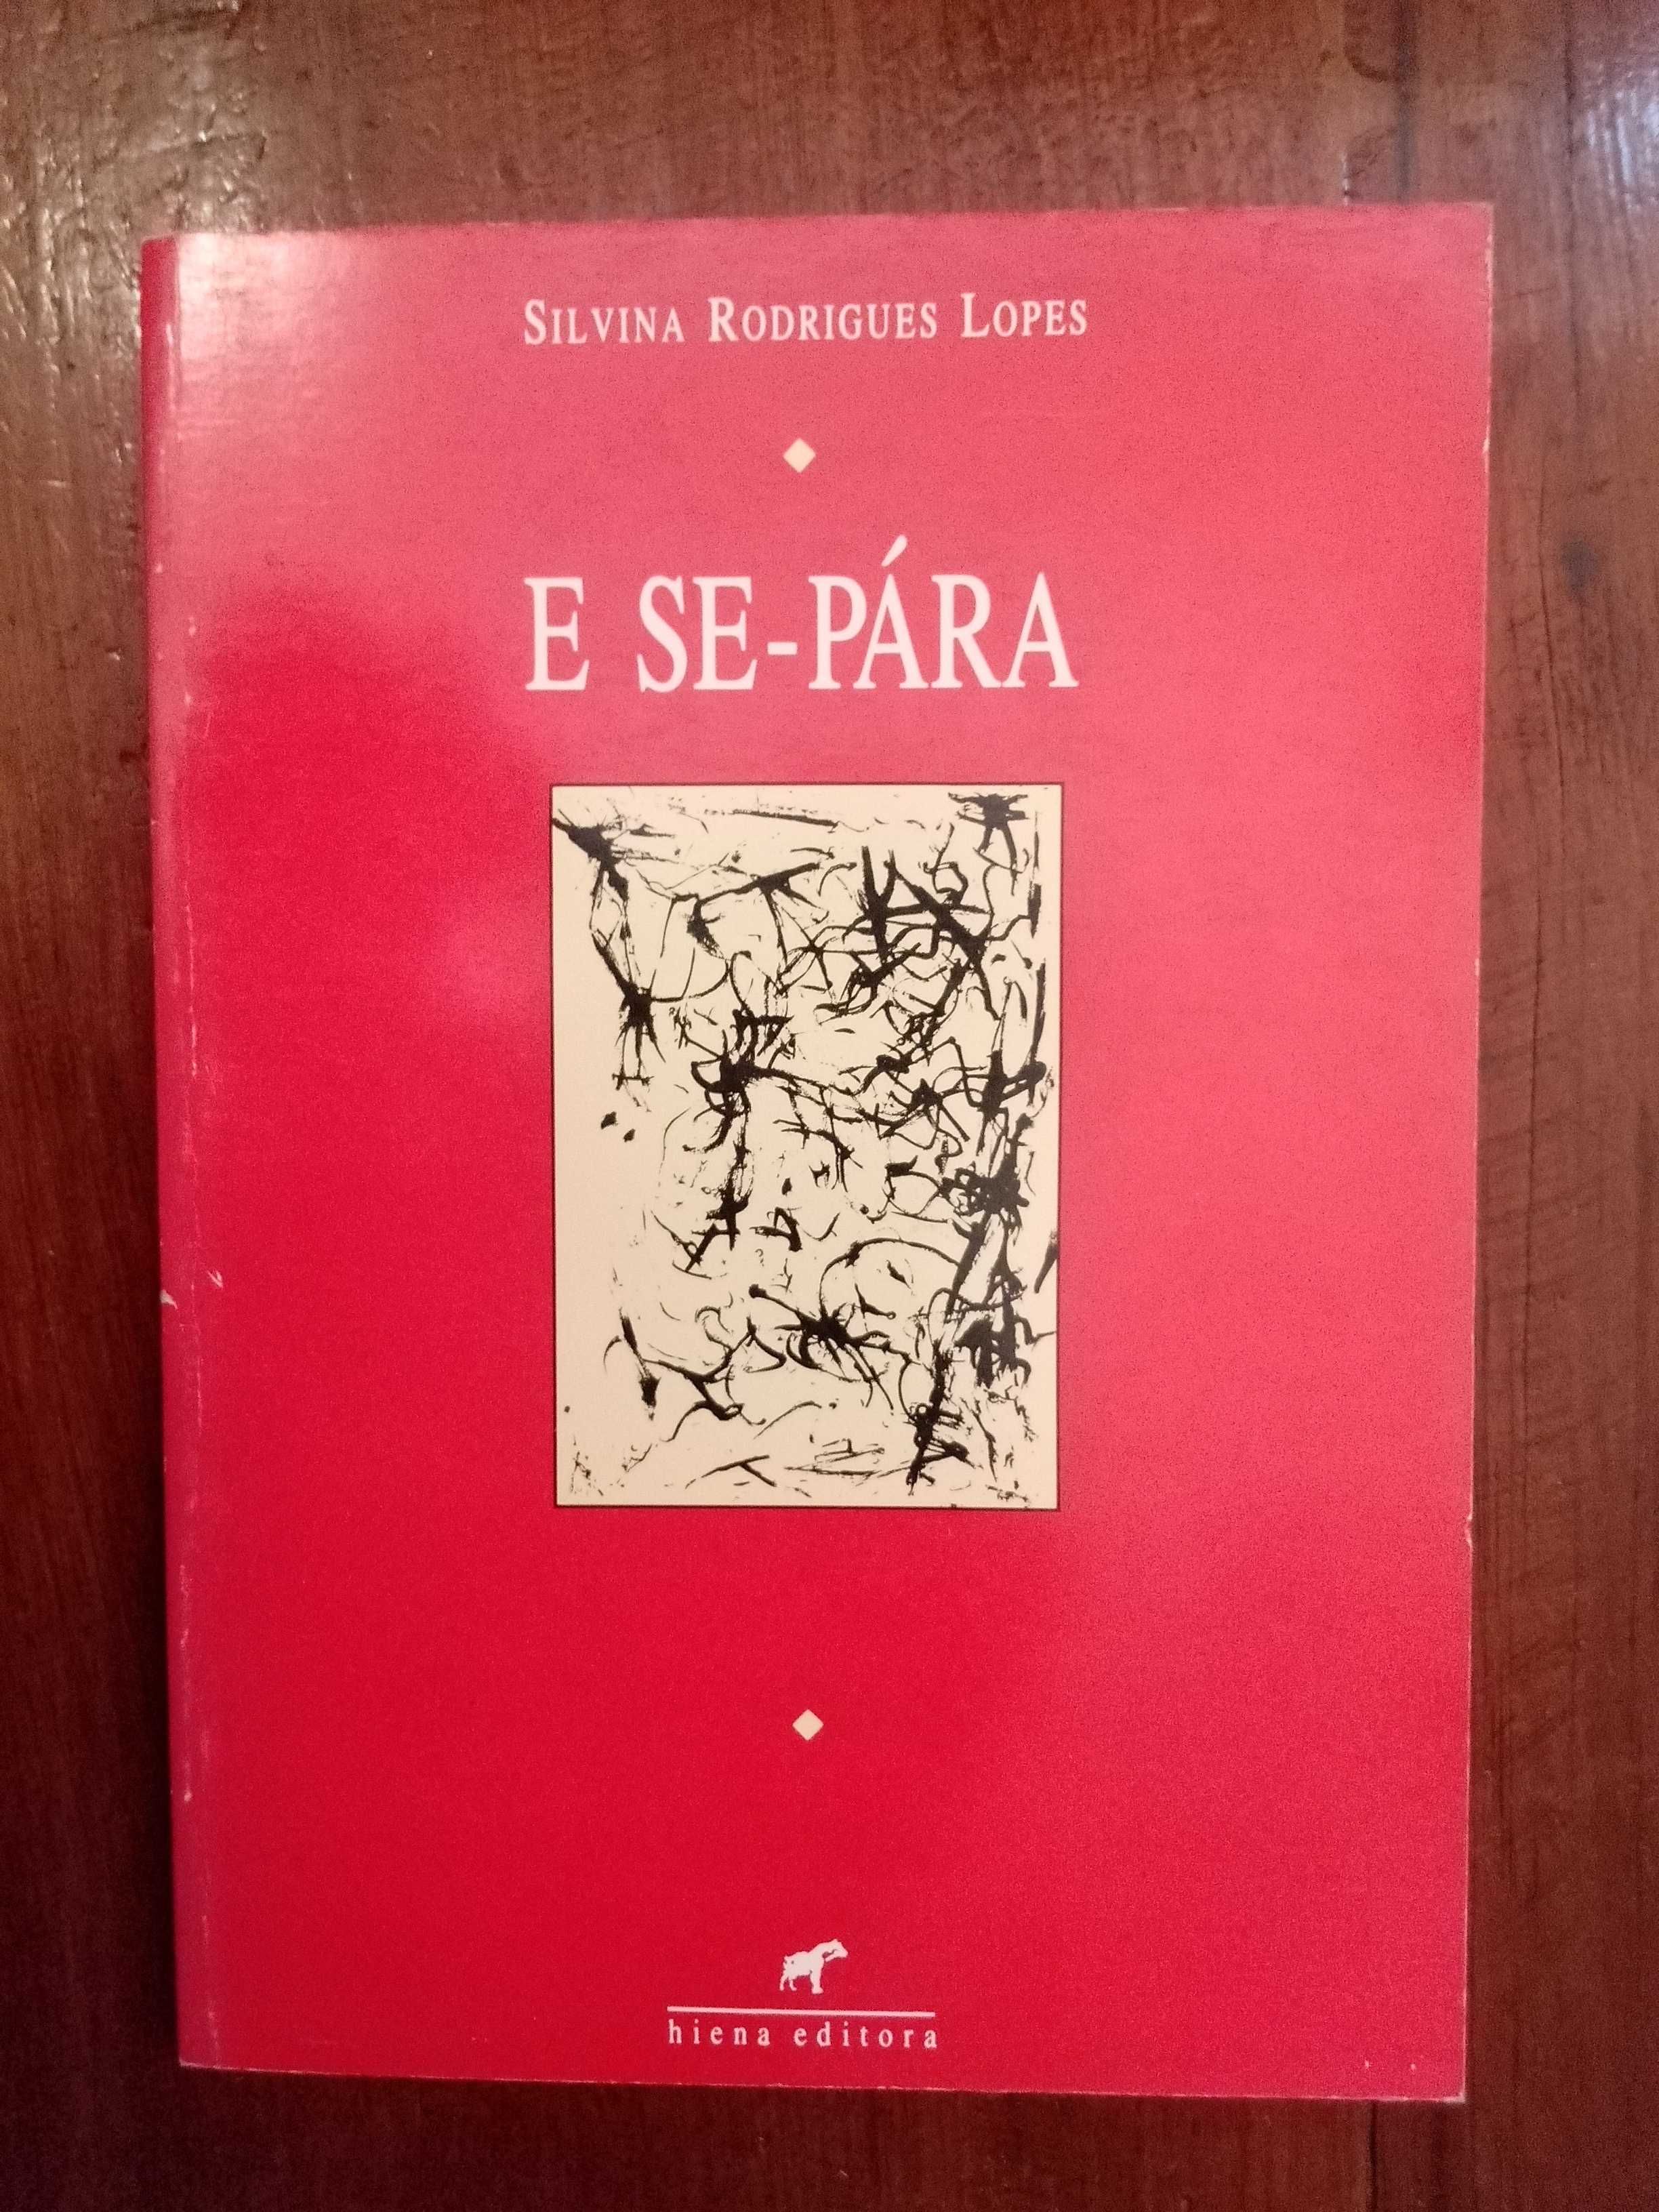 Silvina Rodrigues Lopes - E se-pára [1.ª ed.]